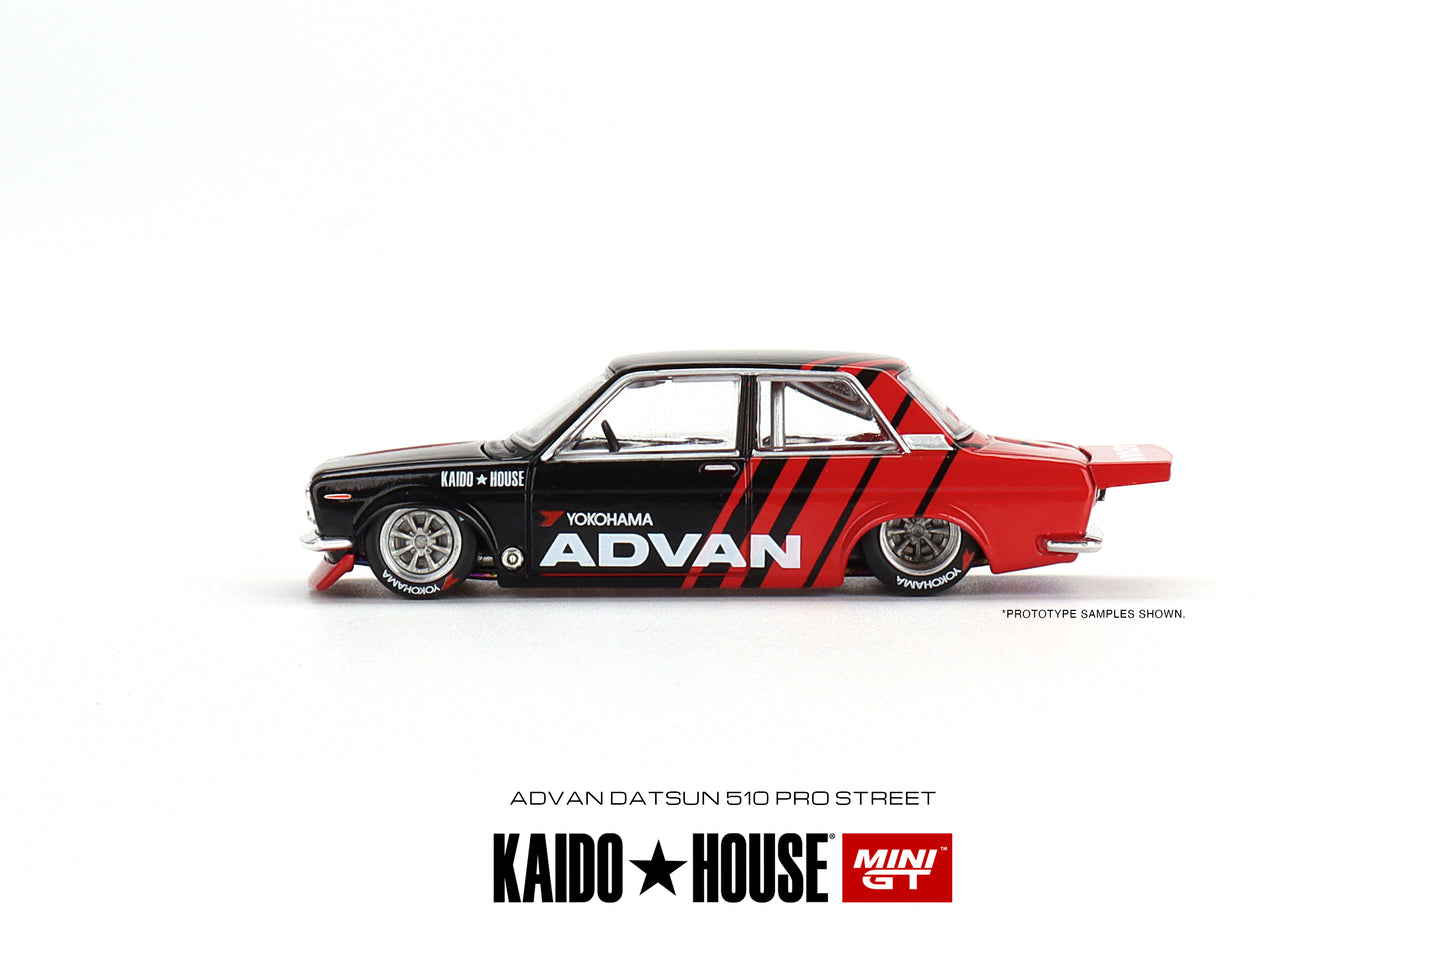 Mini GT Kaido House 032 Datsun 510 Pro Street ADVAN 1:64